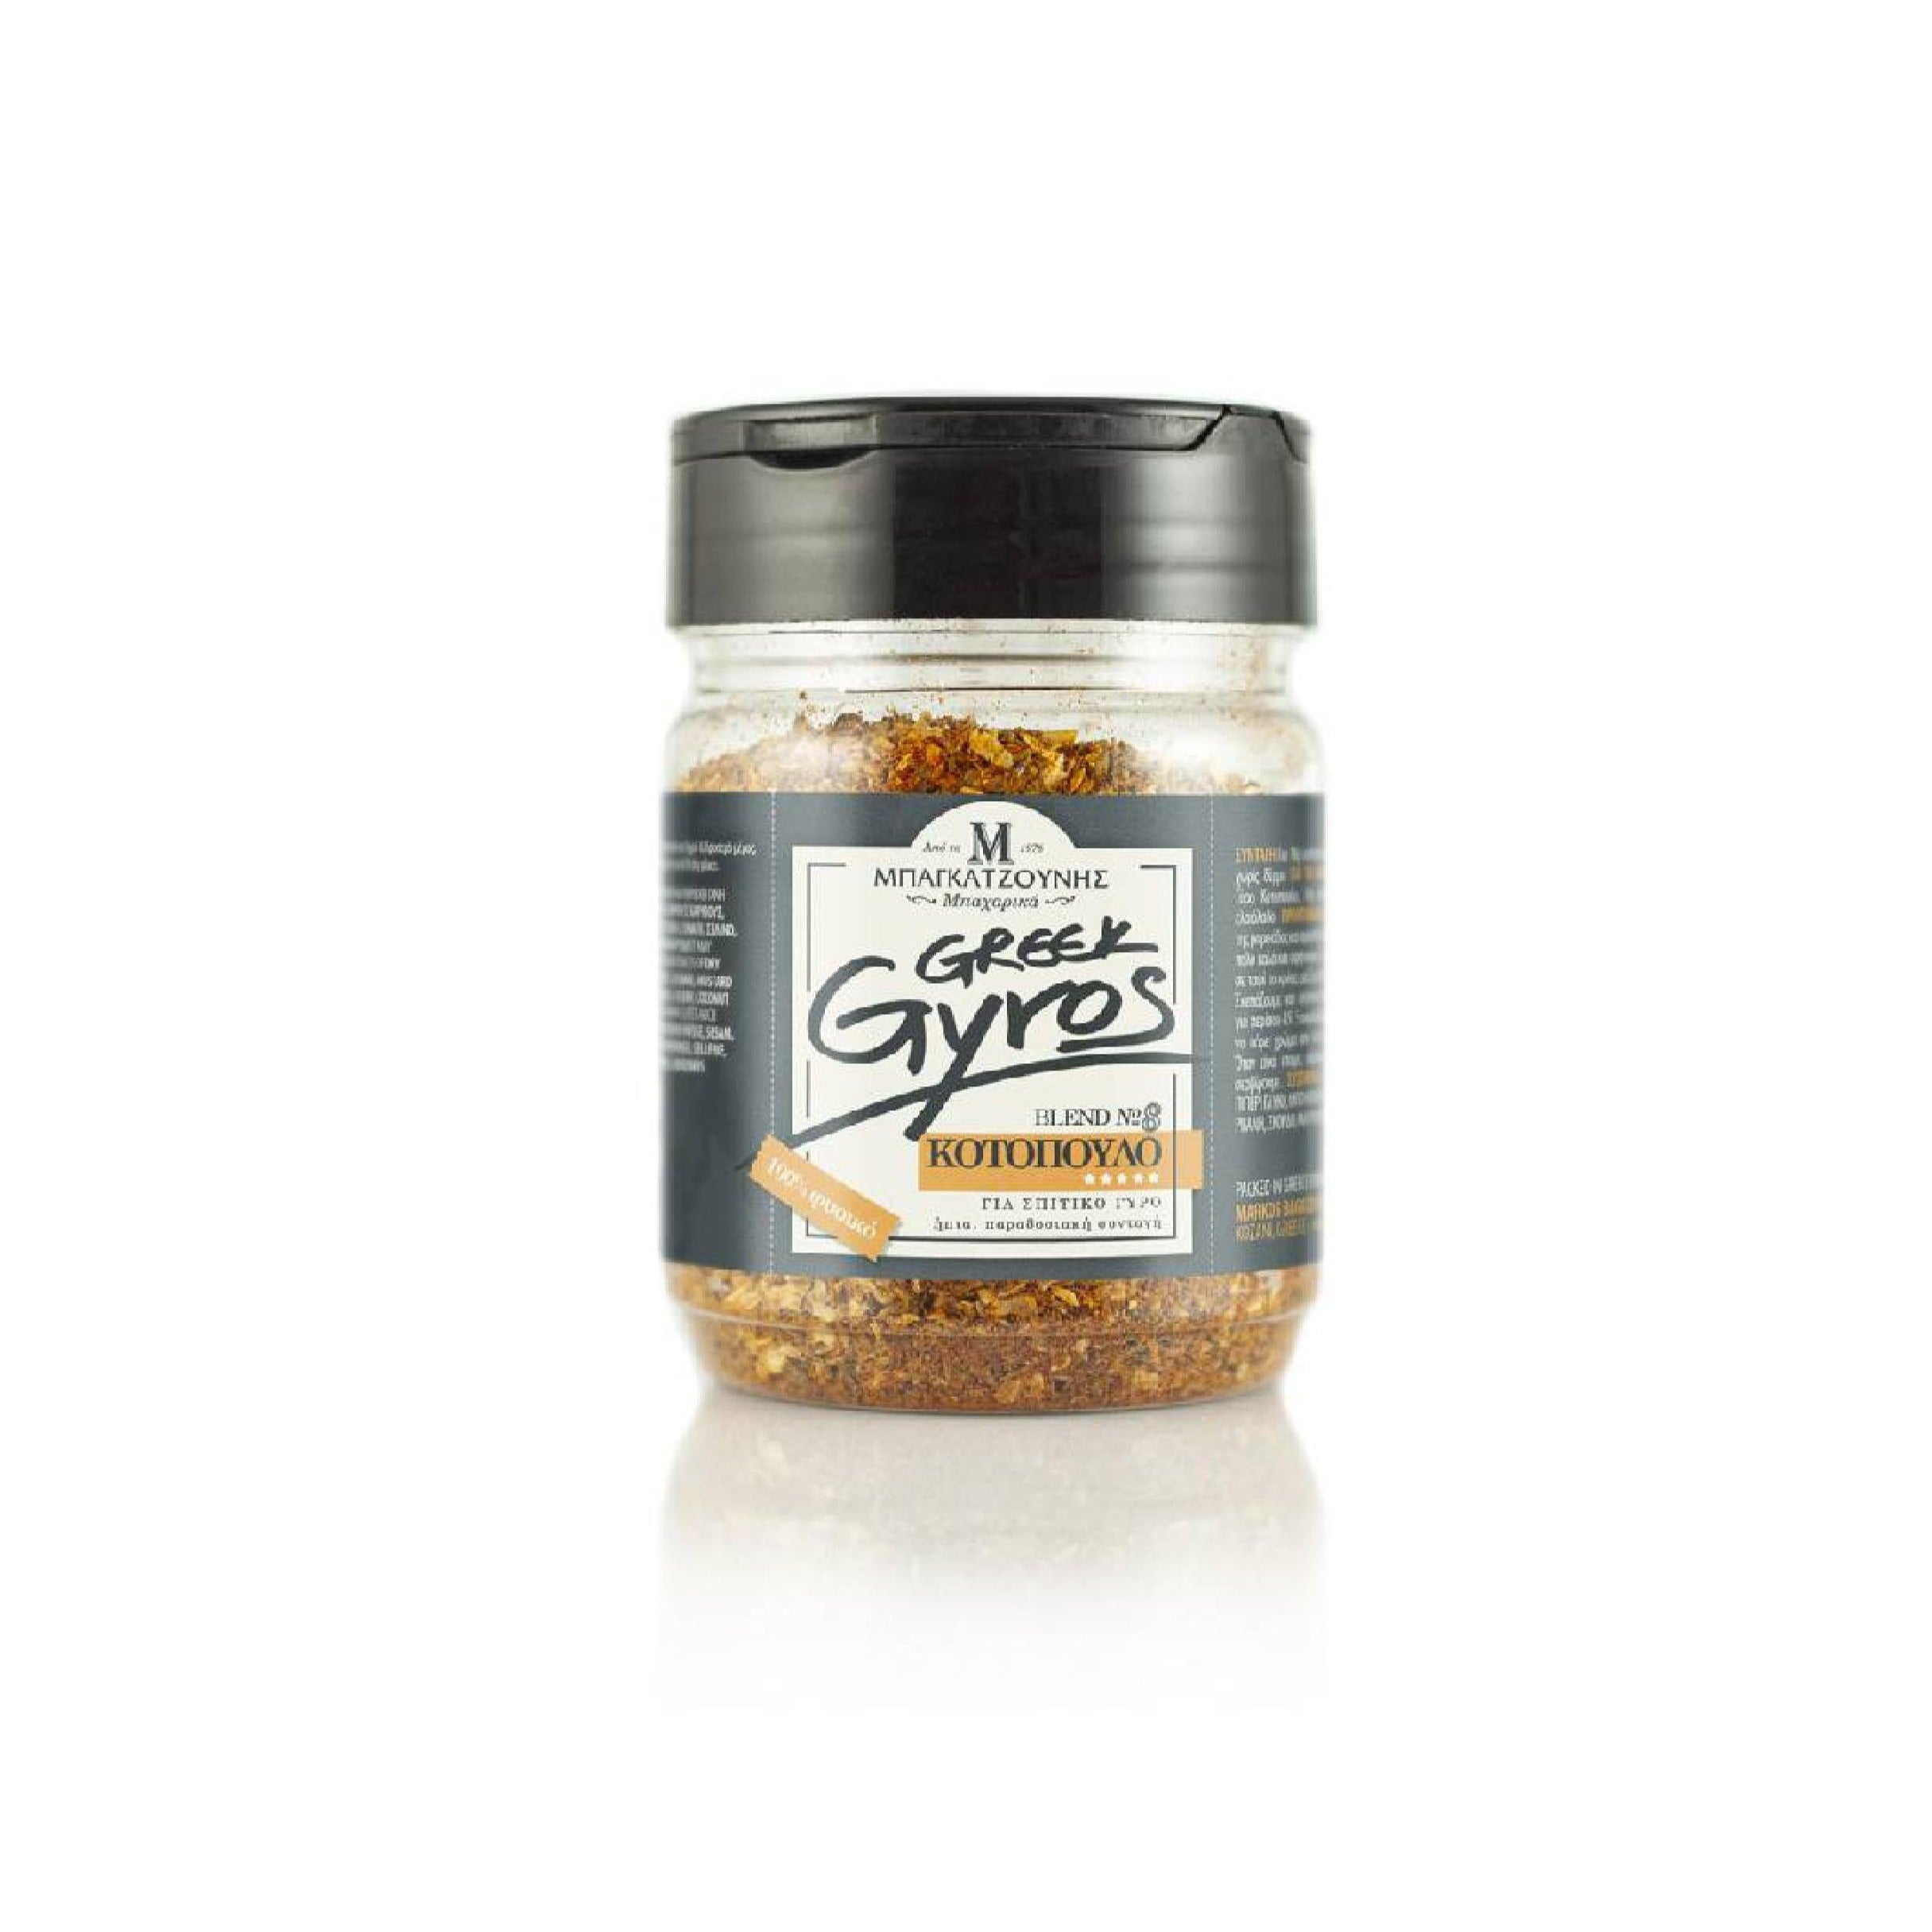 Gyros Spice Mix - Chicken